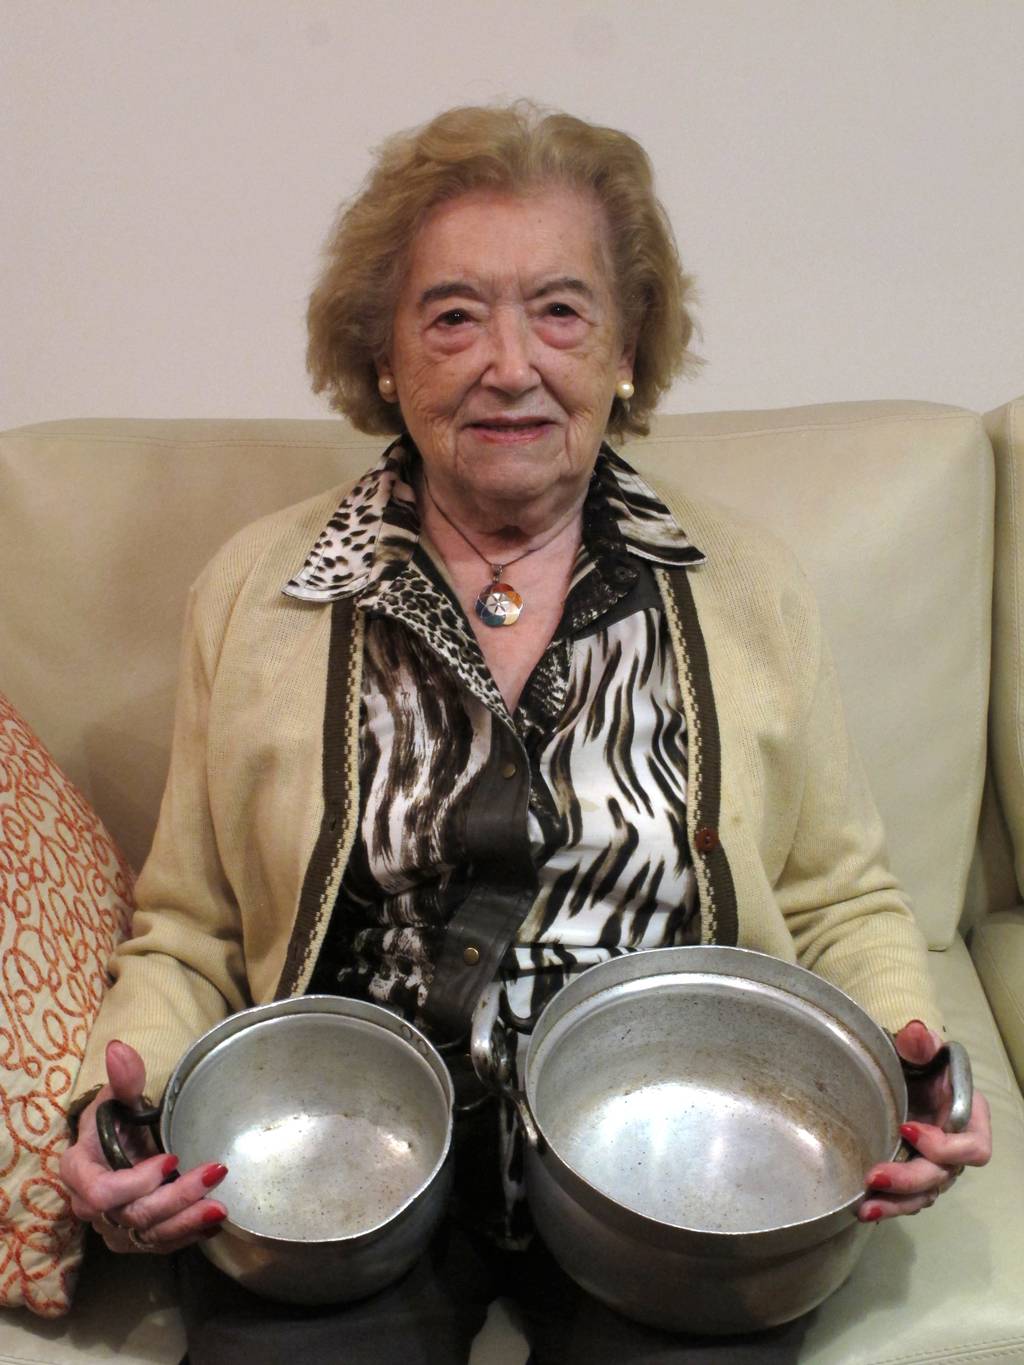 Sara Rus mit zwei Kochtöpfen, die sie nach der Befreiung aus dem KZ Mauthausen mitgenommen hat. (Foto: KZ-Gedenkstätte Mauthausen)